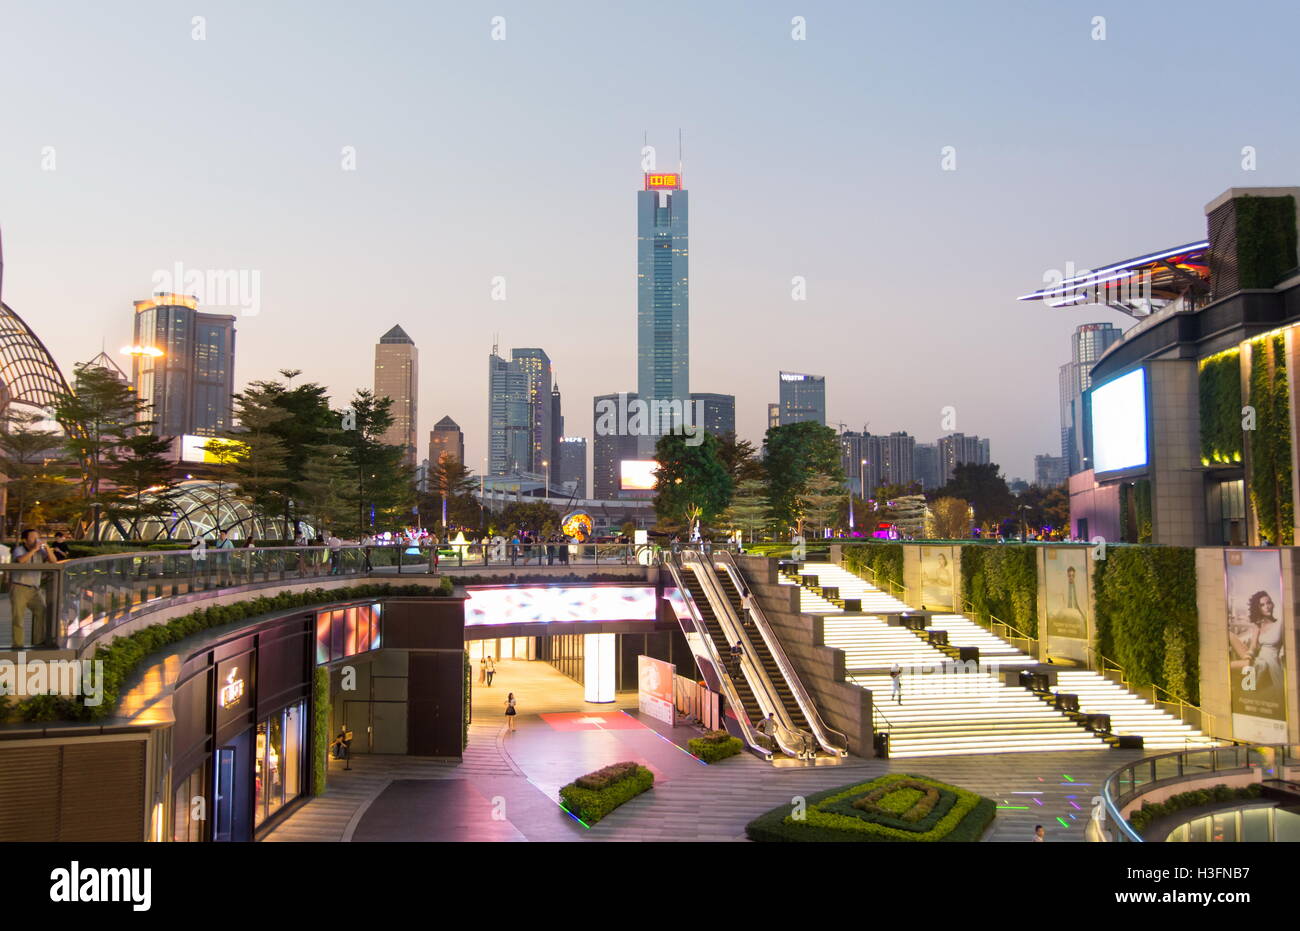 GUANGZHOU, CHINE - Sept 13, 2016 : la ville de Guangzhou vue paysage urbain moderne, la province de Guangdong, Chine Banque D'Images